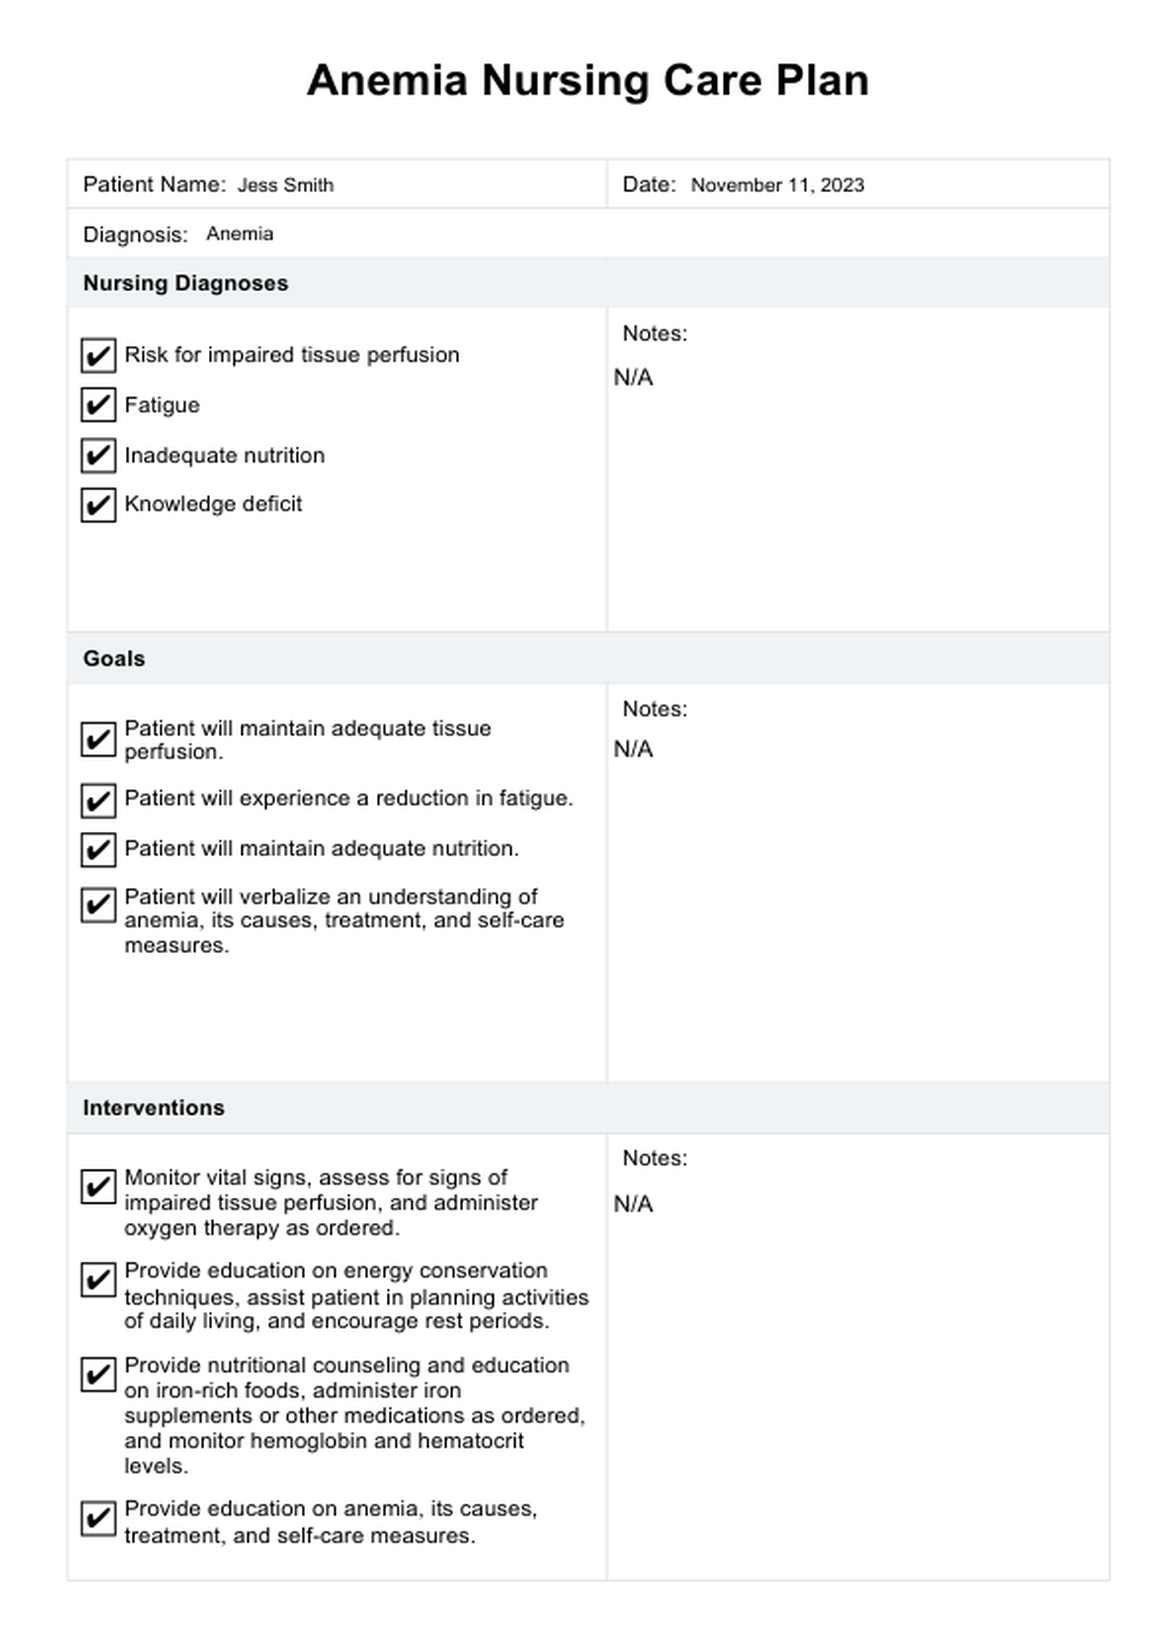 Anemia Nursing Care Plan PDF Example